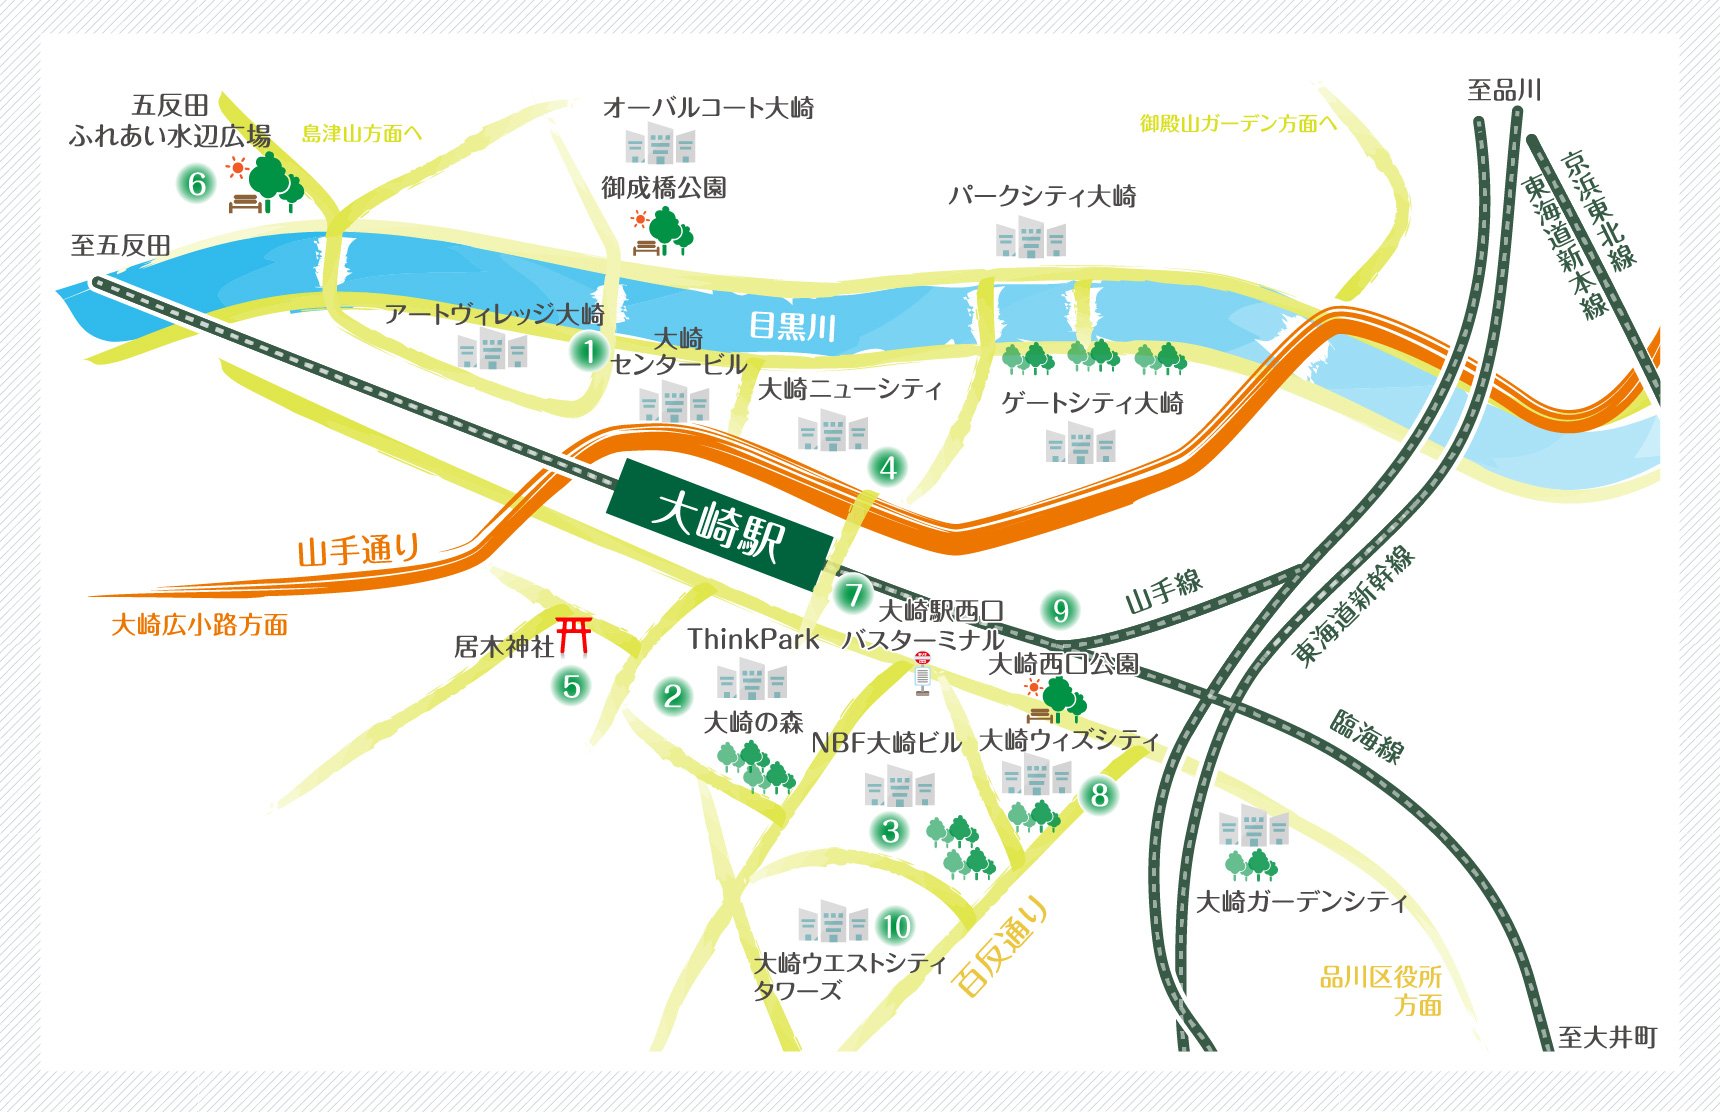 大崎駅周辺マップ